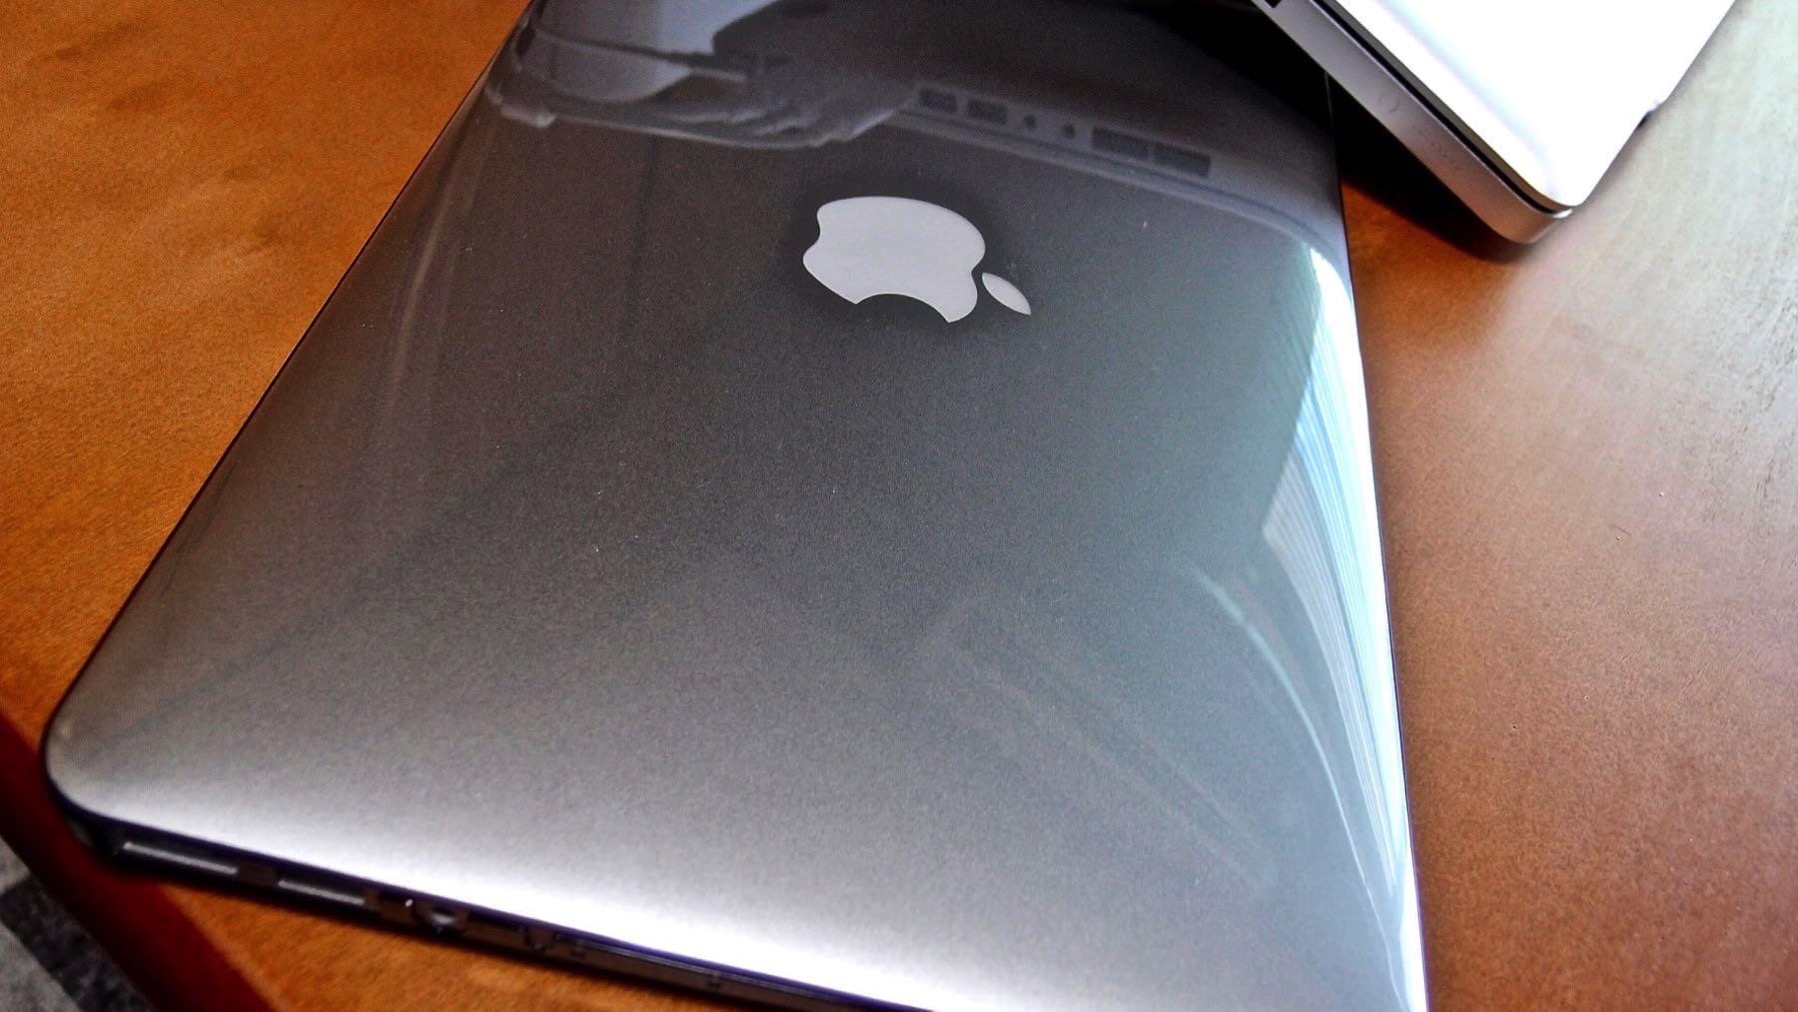 04 MacBook Air2013 11inch AirJacket